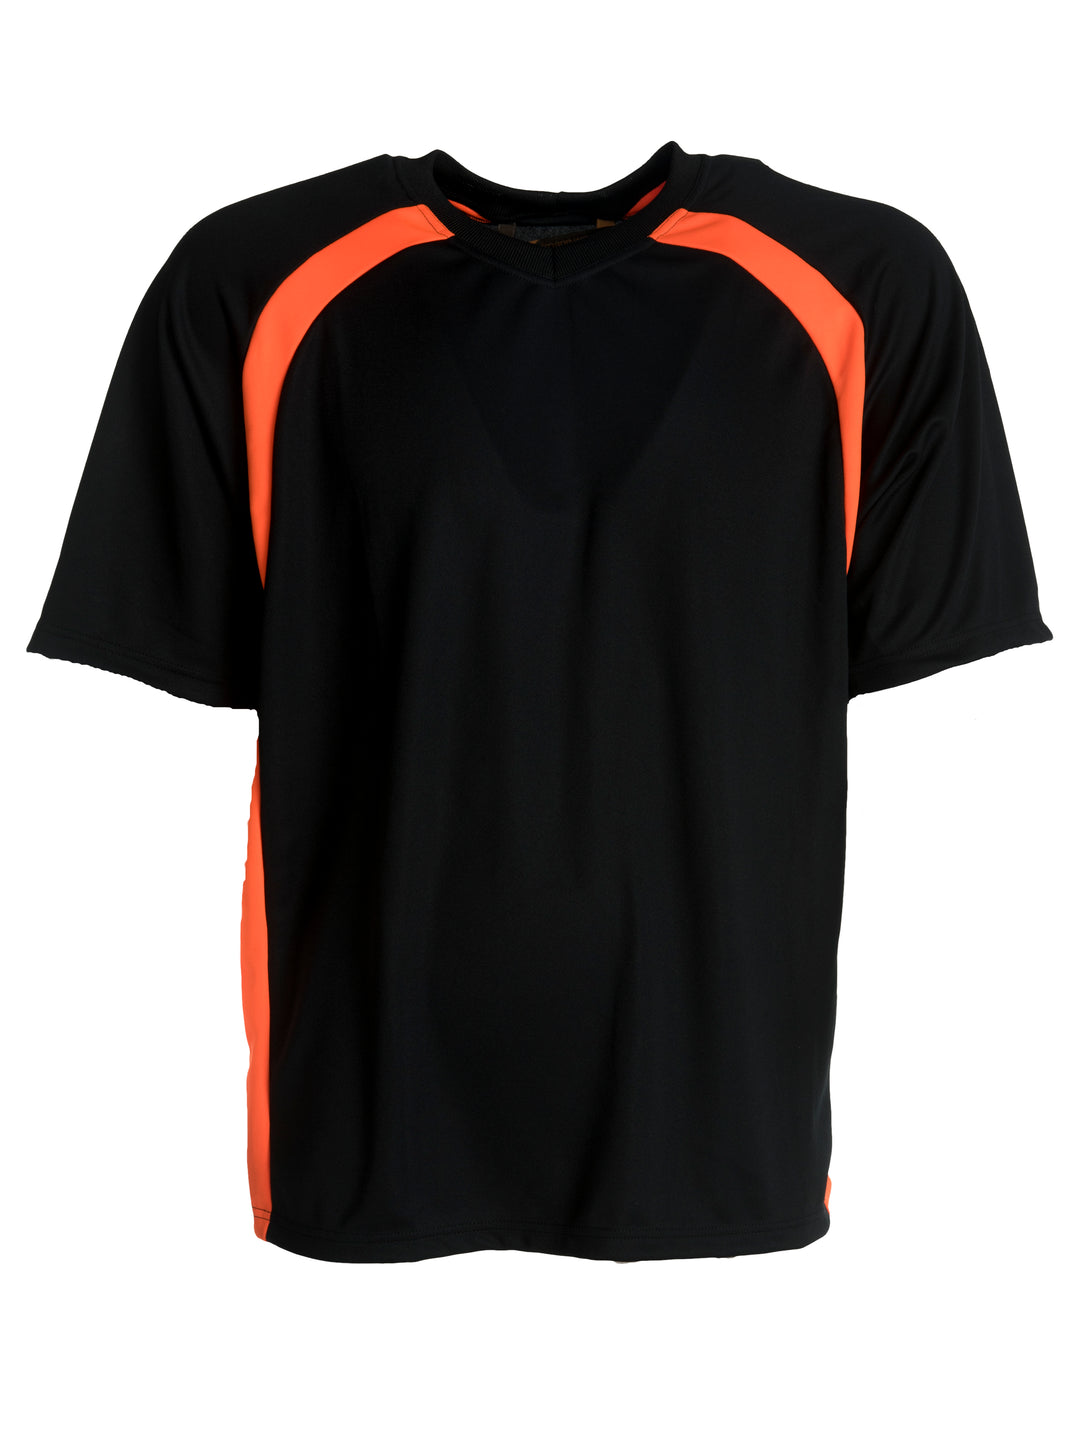 Musta lyhythihainen t-paita teknisestä materiaalista. Suora malli, pyöreä pääntie. Raglan-hiha. Edessä ylhäällä sekä sivulla oranssit kaistaleet.